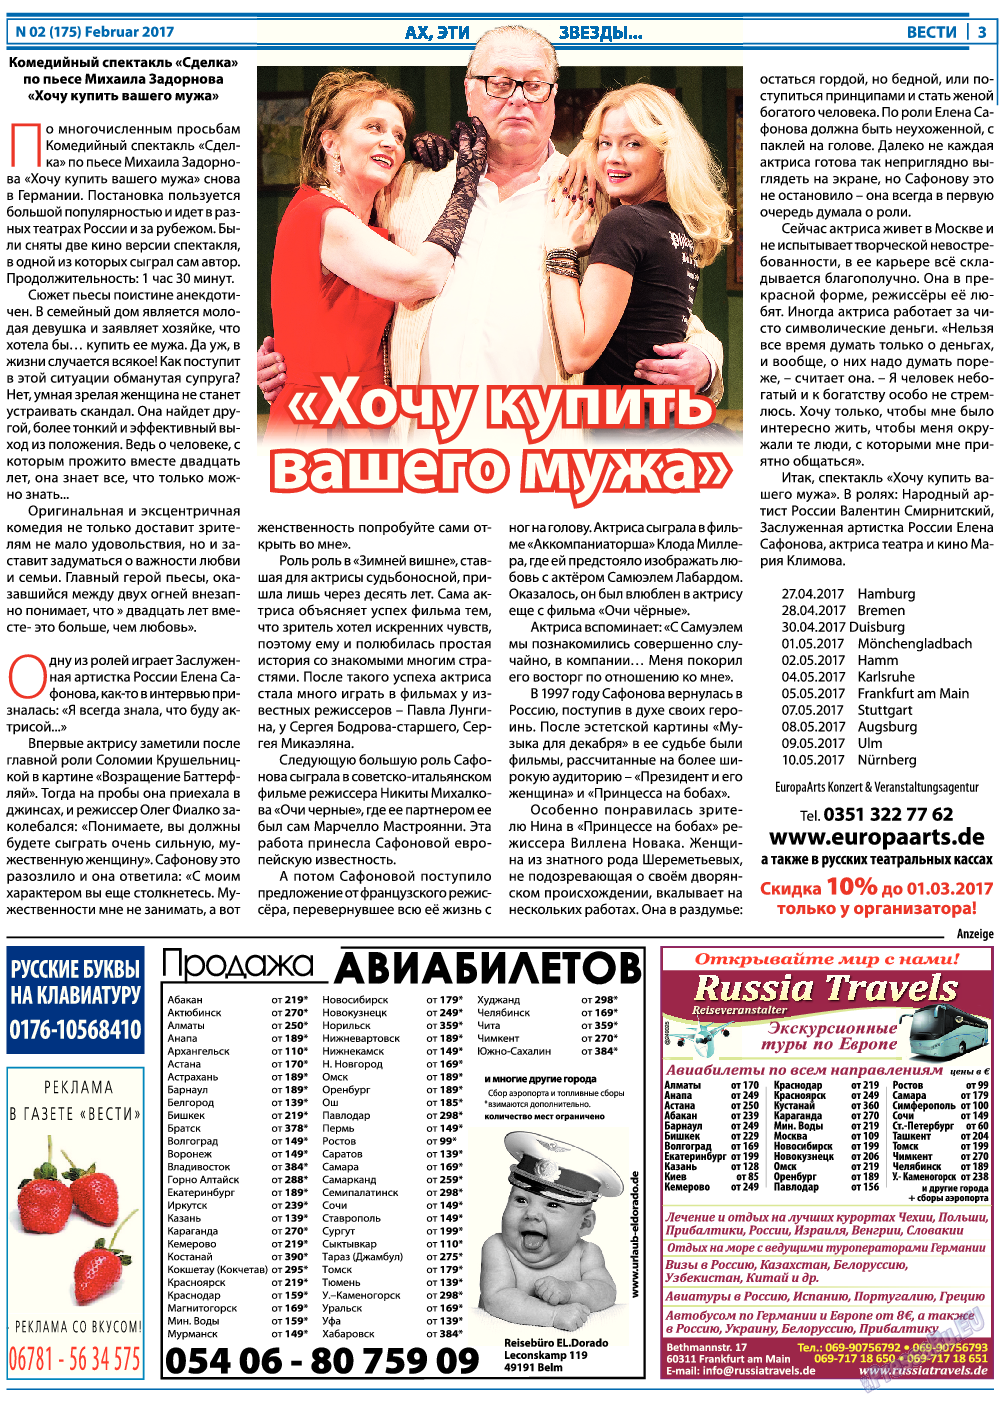 Вести, газета. 2017 №2 стр.3